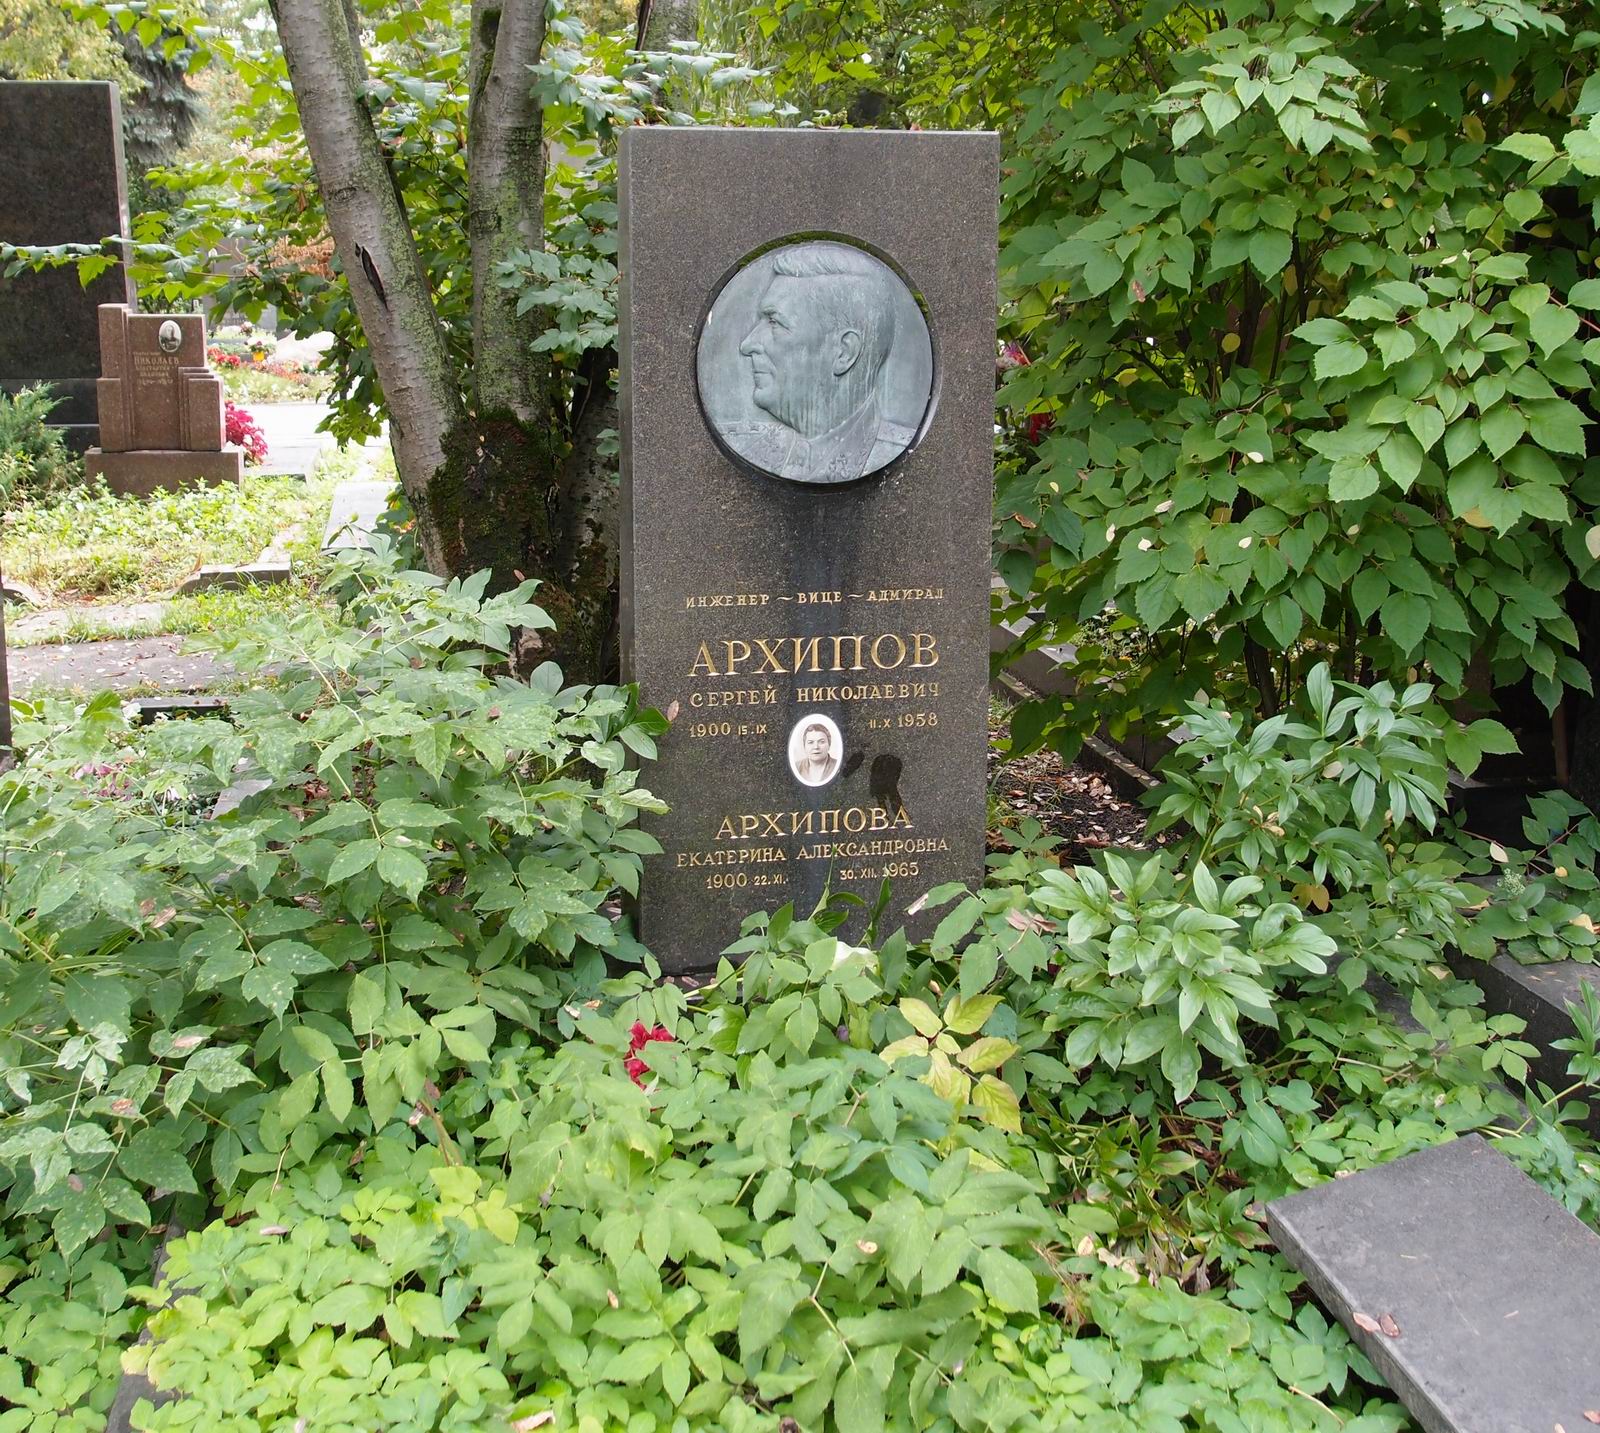 Памятник на могиле Архипова С.Н. (1900-1958), на Новодевичьем кладбище (5-27-5). Нажмите левую кнопку мыши чтобы увидеть фрагмент памятника.